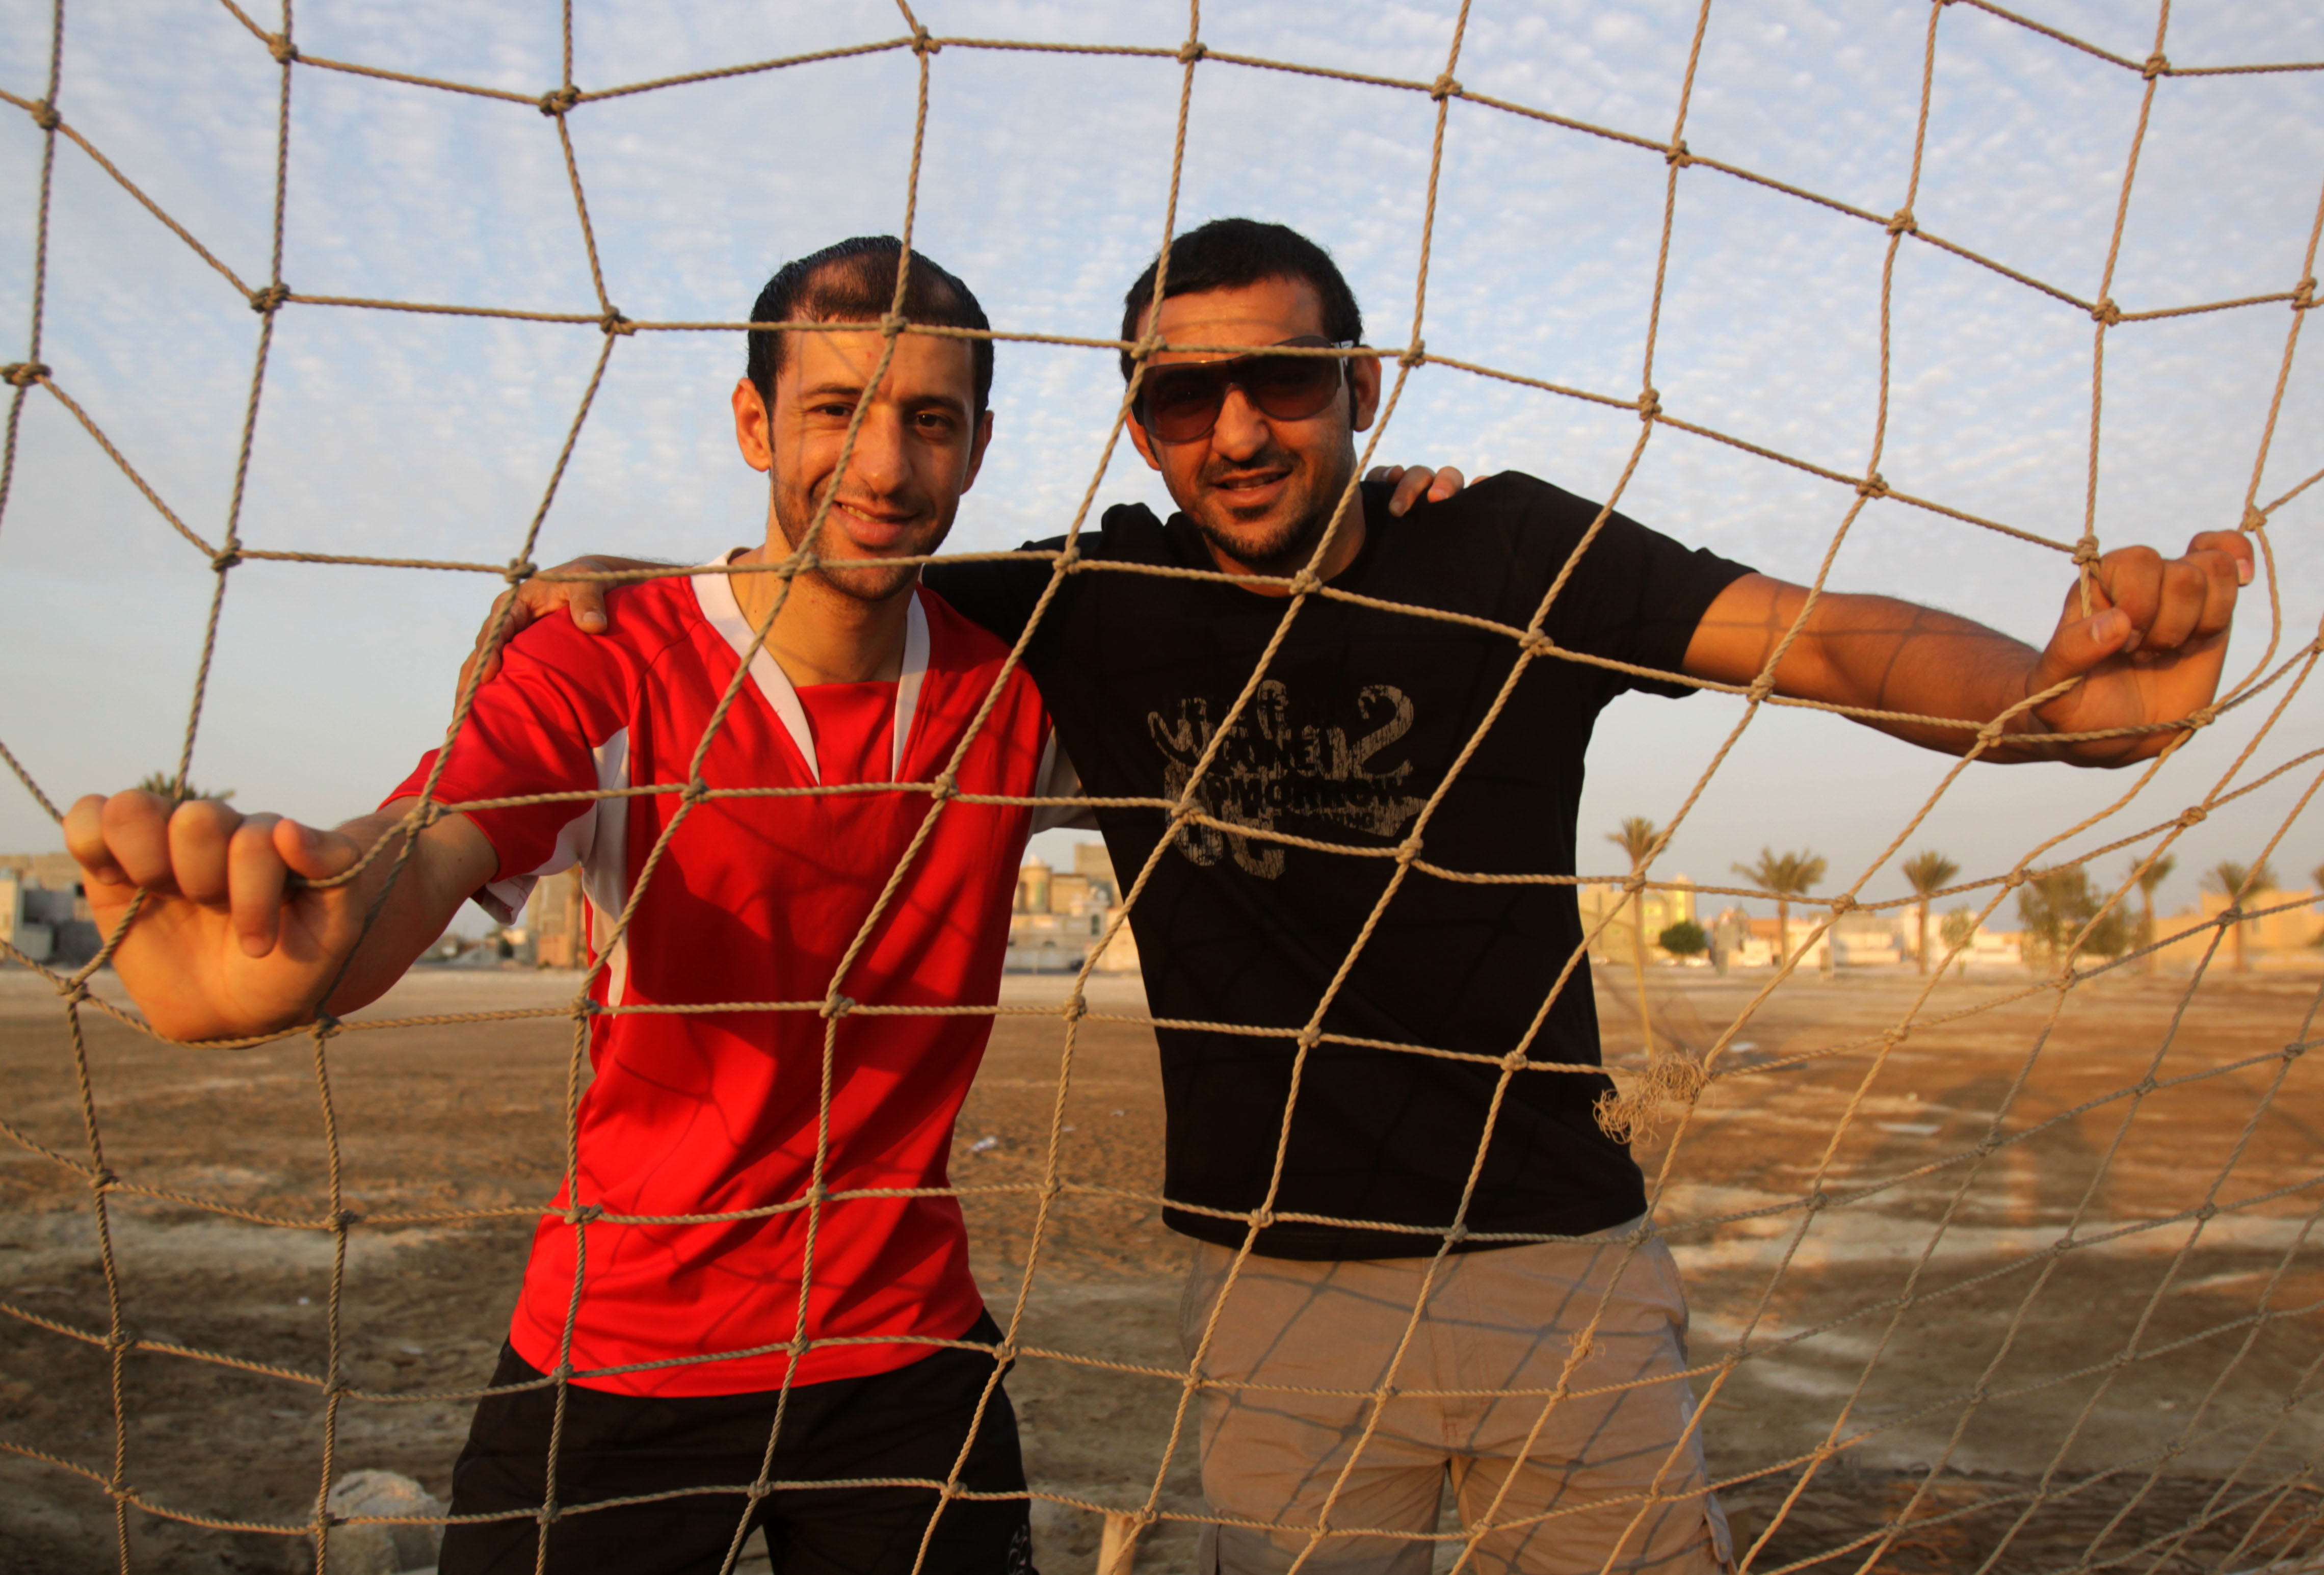 Bröderna Mohamed och Ala'a Hubail fängslades efter vårens protester men släpptes och kunde fly landet. Numera spelar de i varsitt ligalag i Oman.